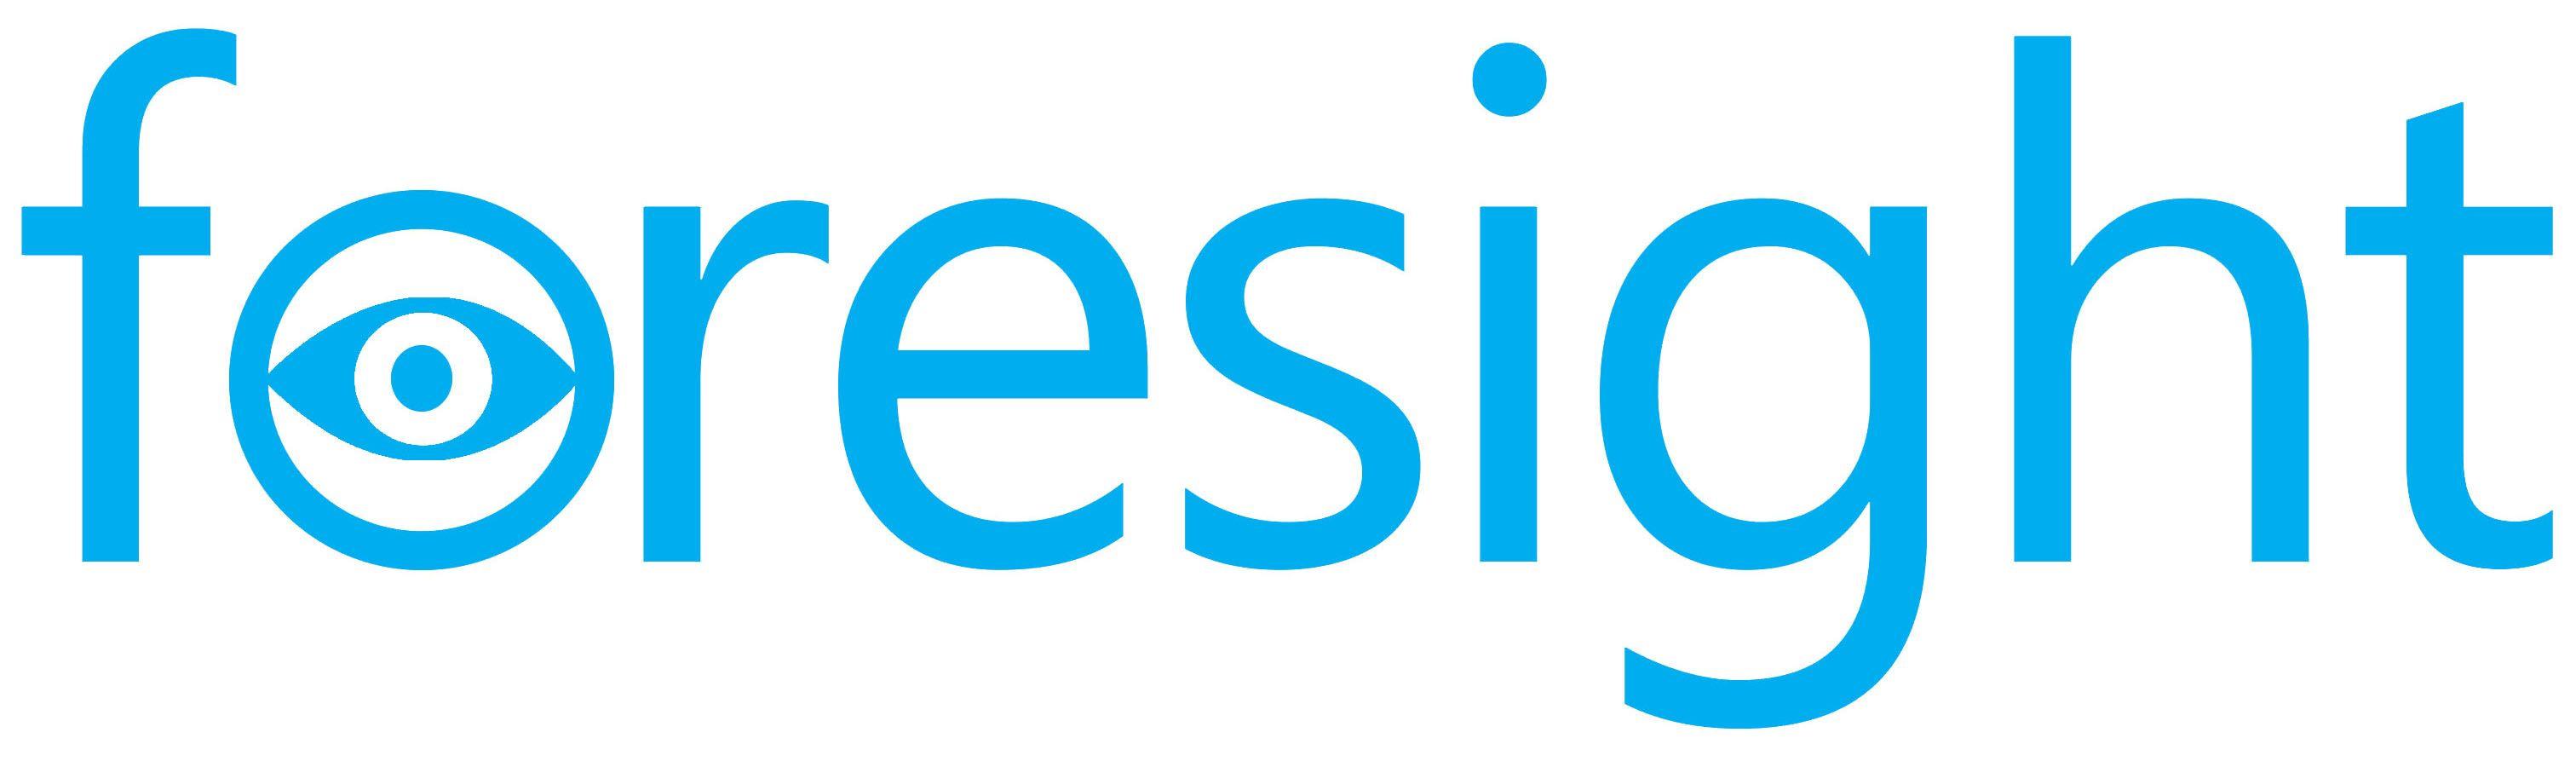 Foresight Logo - Foresight Logo - In-house Recruitment Network